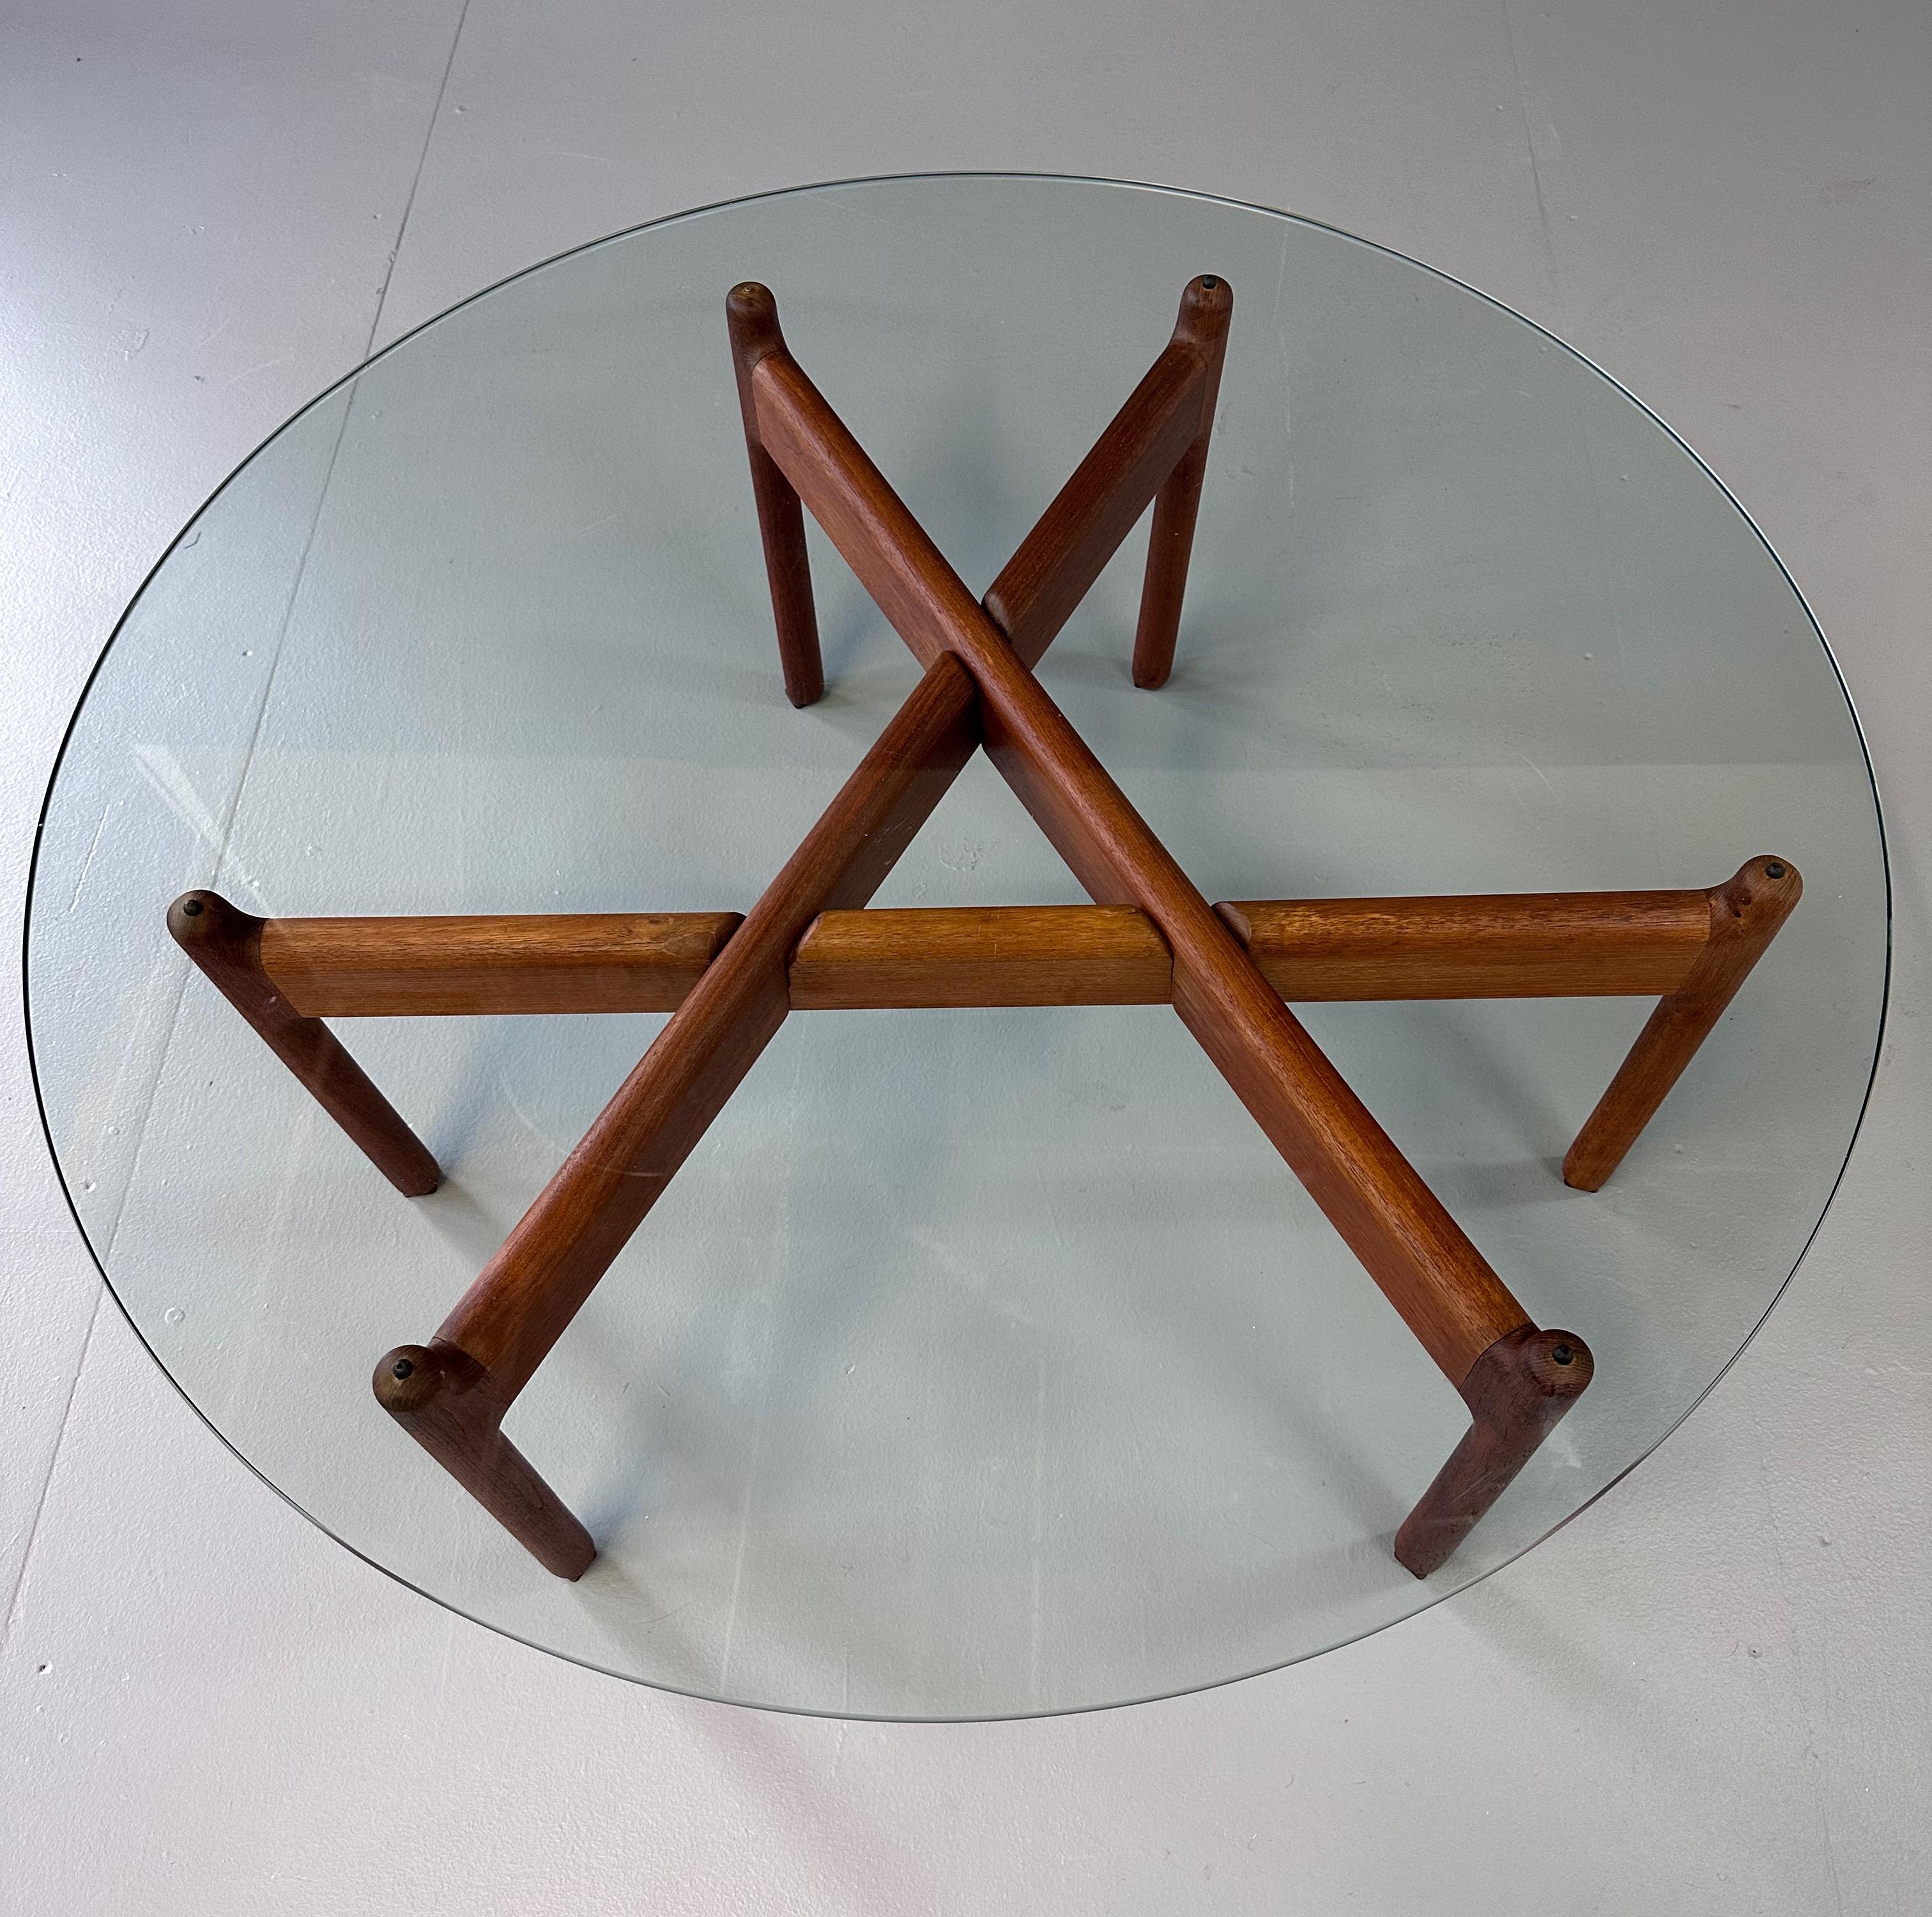 Très belle et rare table basse dessinée par Niels Bach, Danemark 1960. Cette table a une base en teck massif en 3 parties, facile à assembler. Avec un plateau en verre trempé. Très belle table de forme sculpturale,